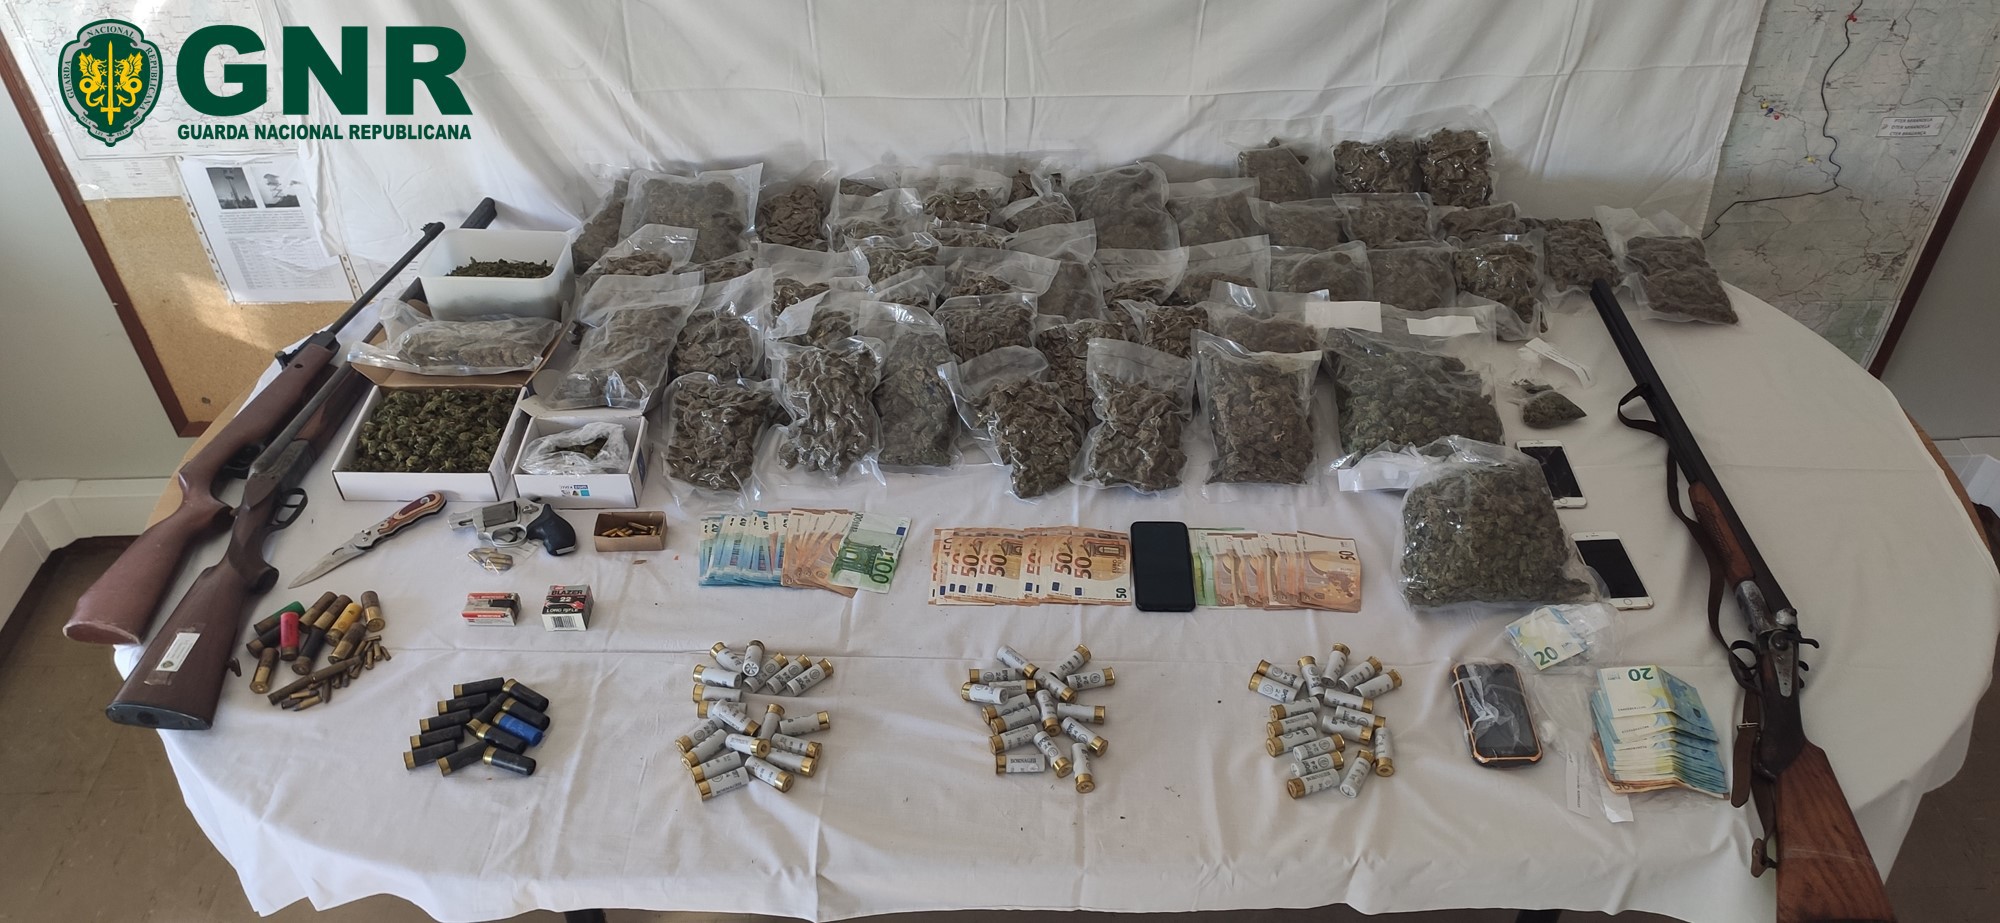 Seis detidos por tráfico de 2.720 doses de droga e posse ilegal de arma